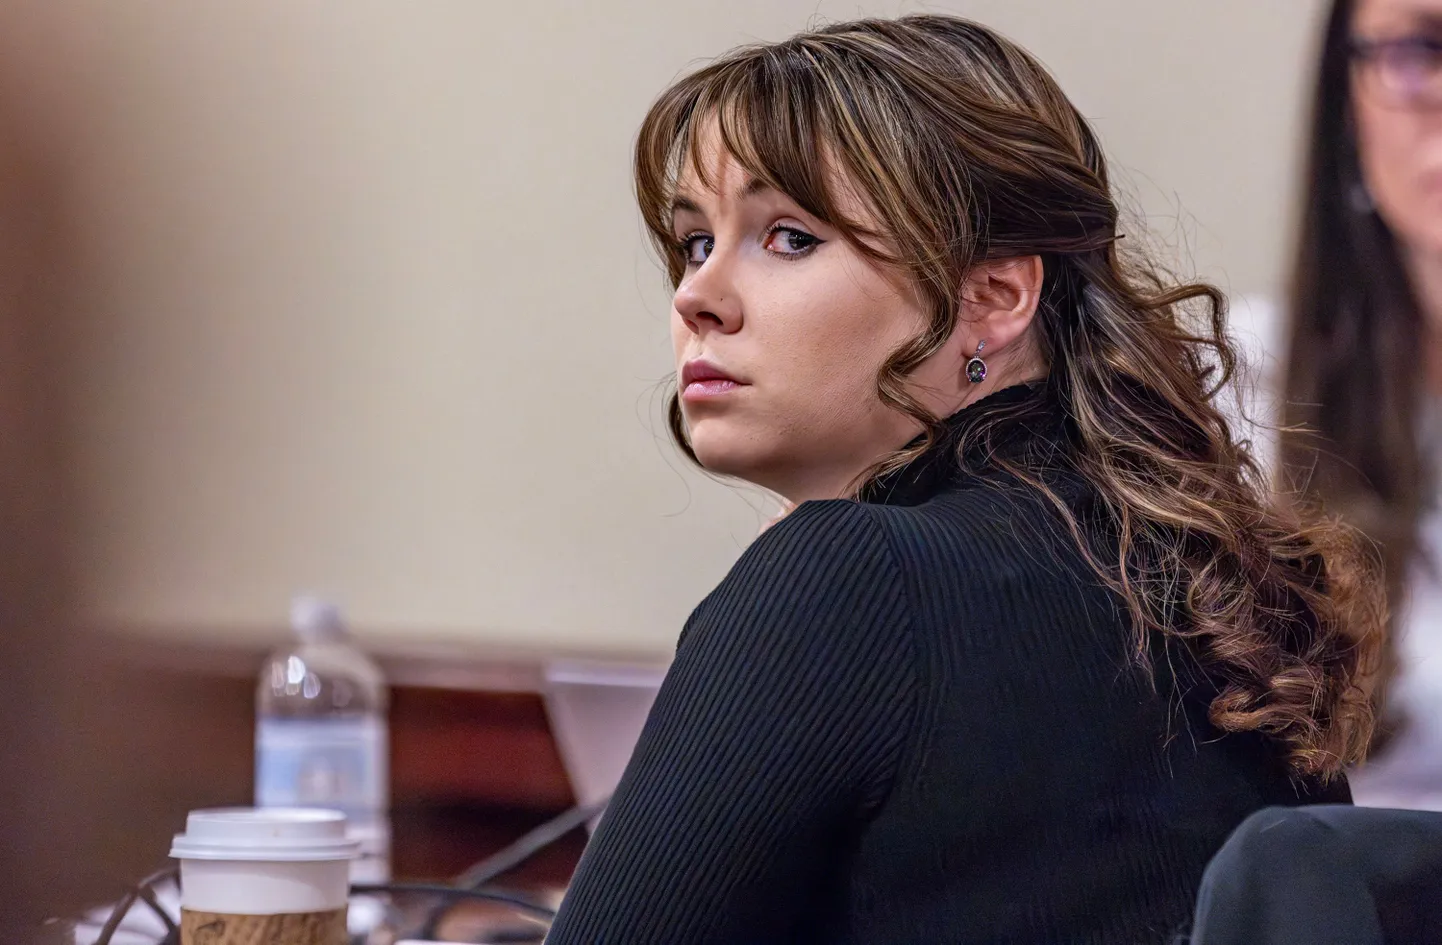 Langetati kohtuotsus 26-aastase relvakäsitleja Hannah Gutierrez-Reedi, kes 2021. aastal ulatas filmivõtetel näitleja Alec Baldwinile laetud relva.